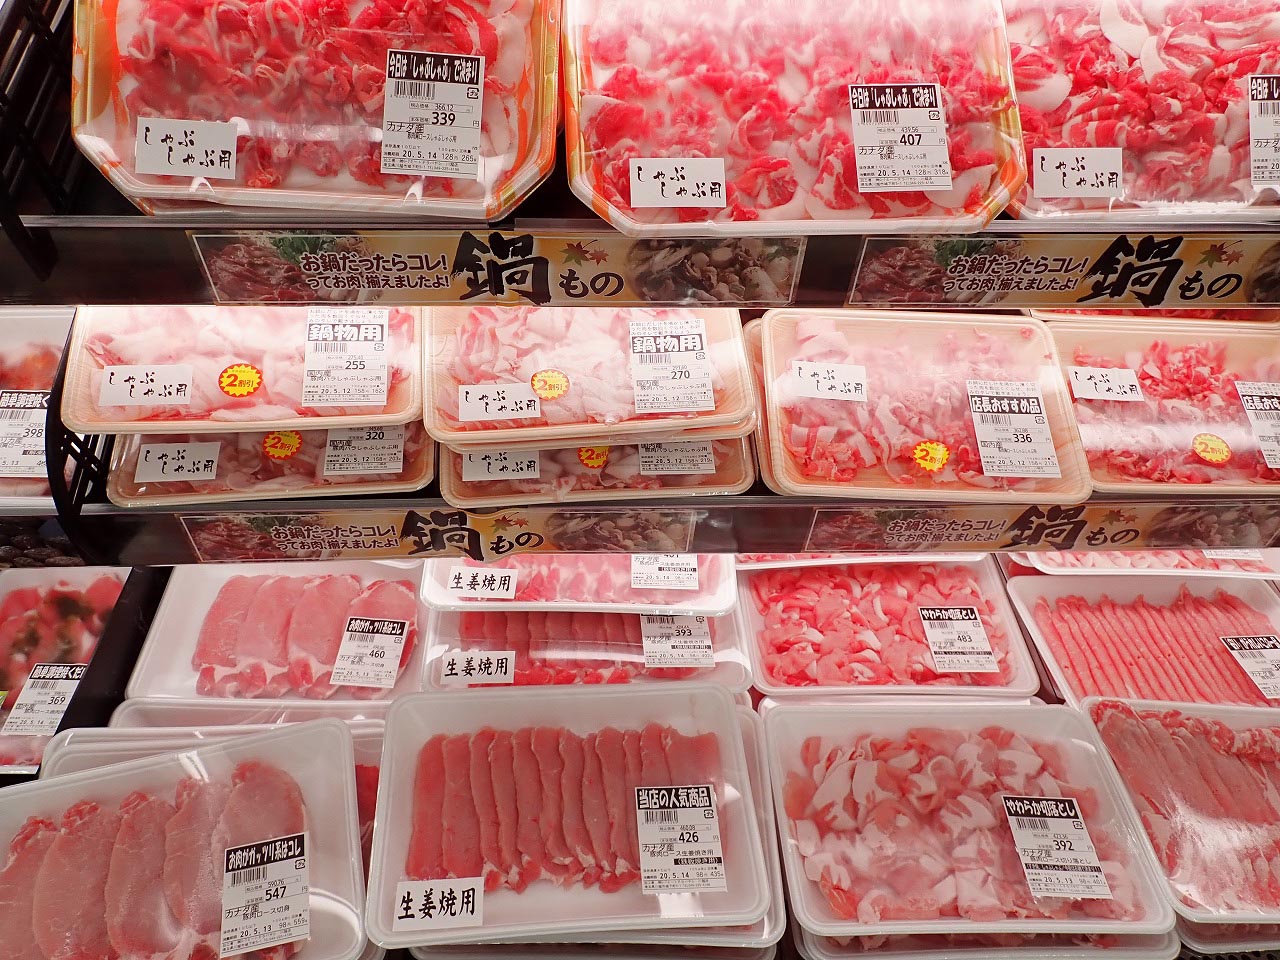 お買い得な『業務スーパー』の肉